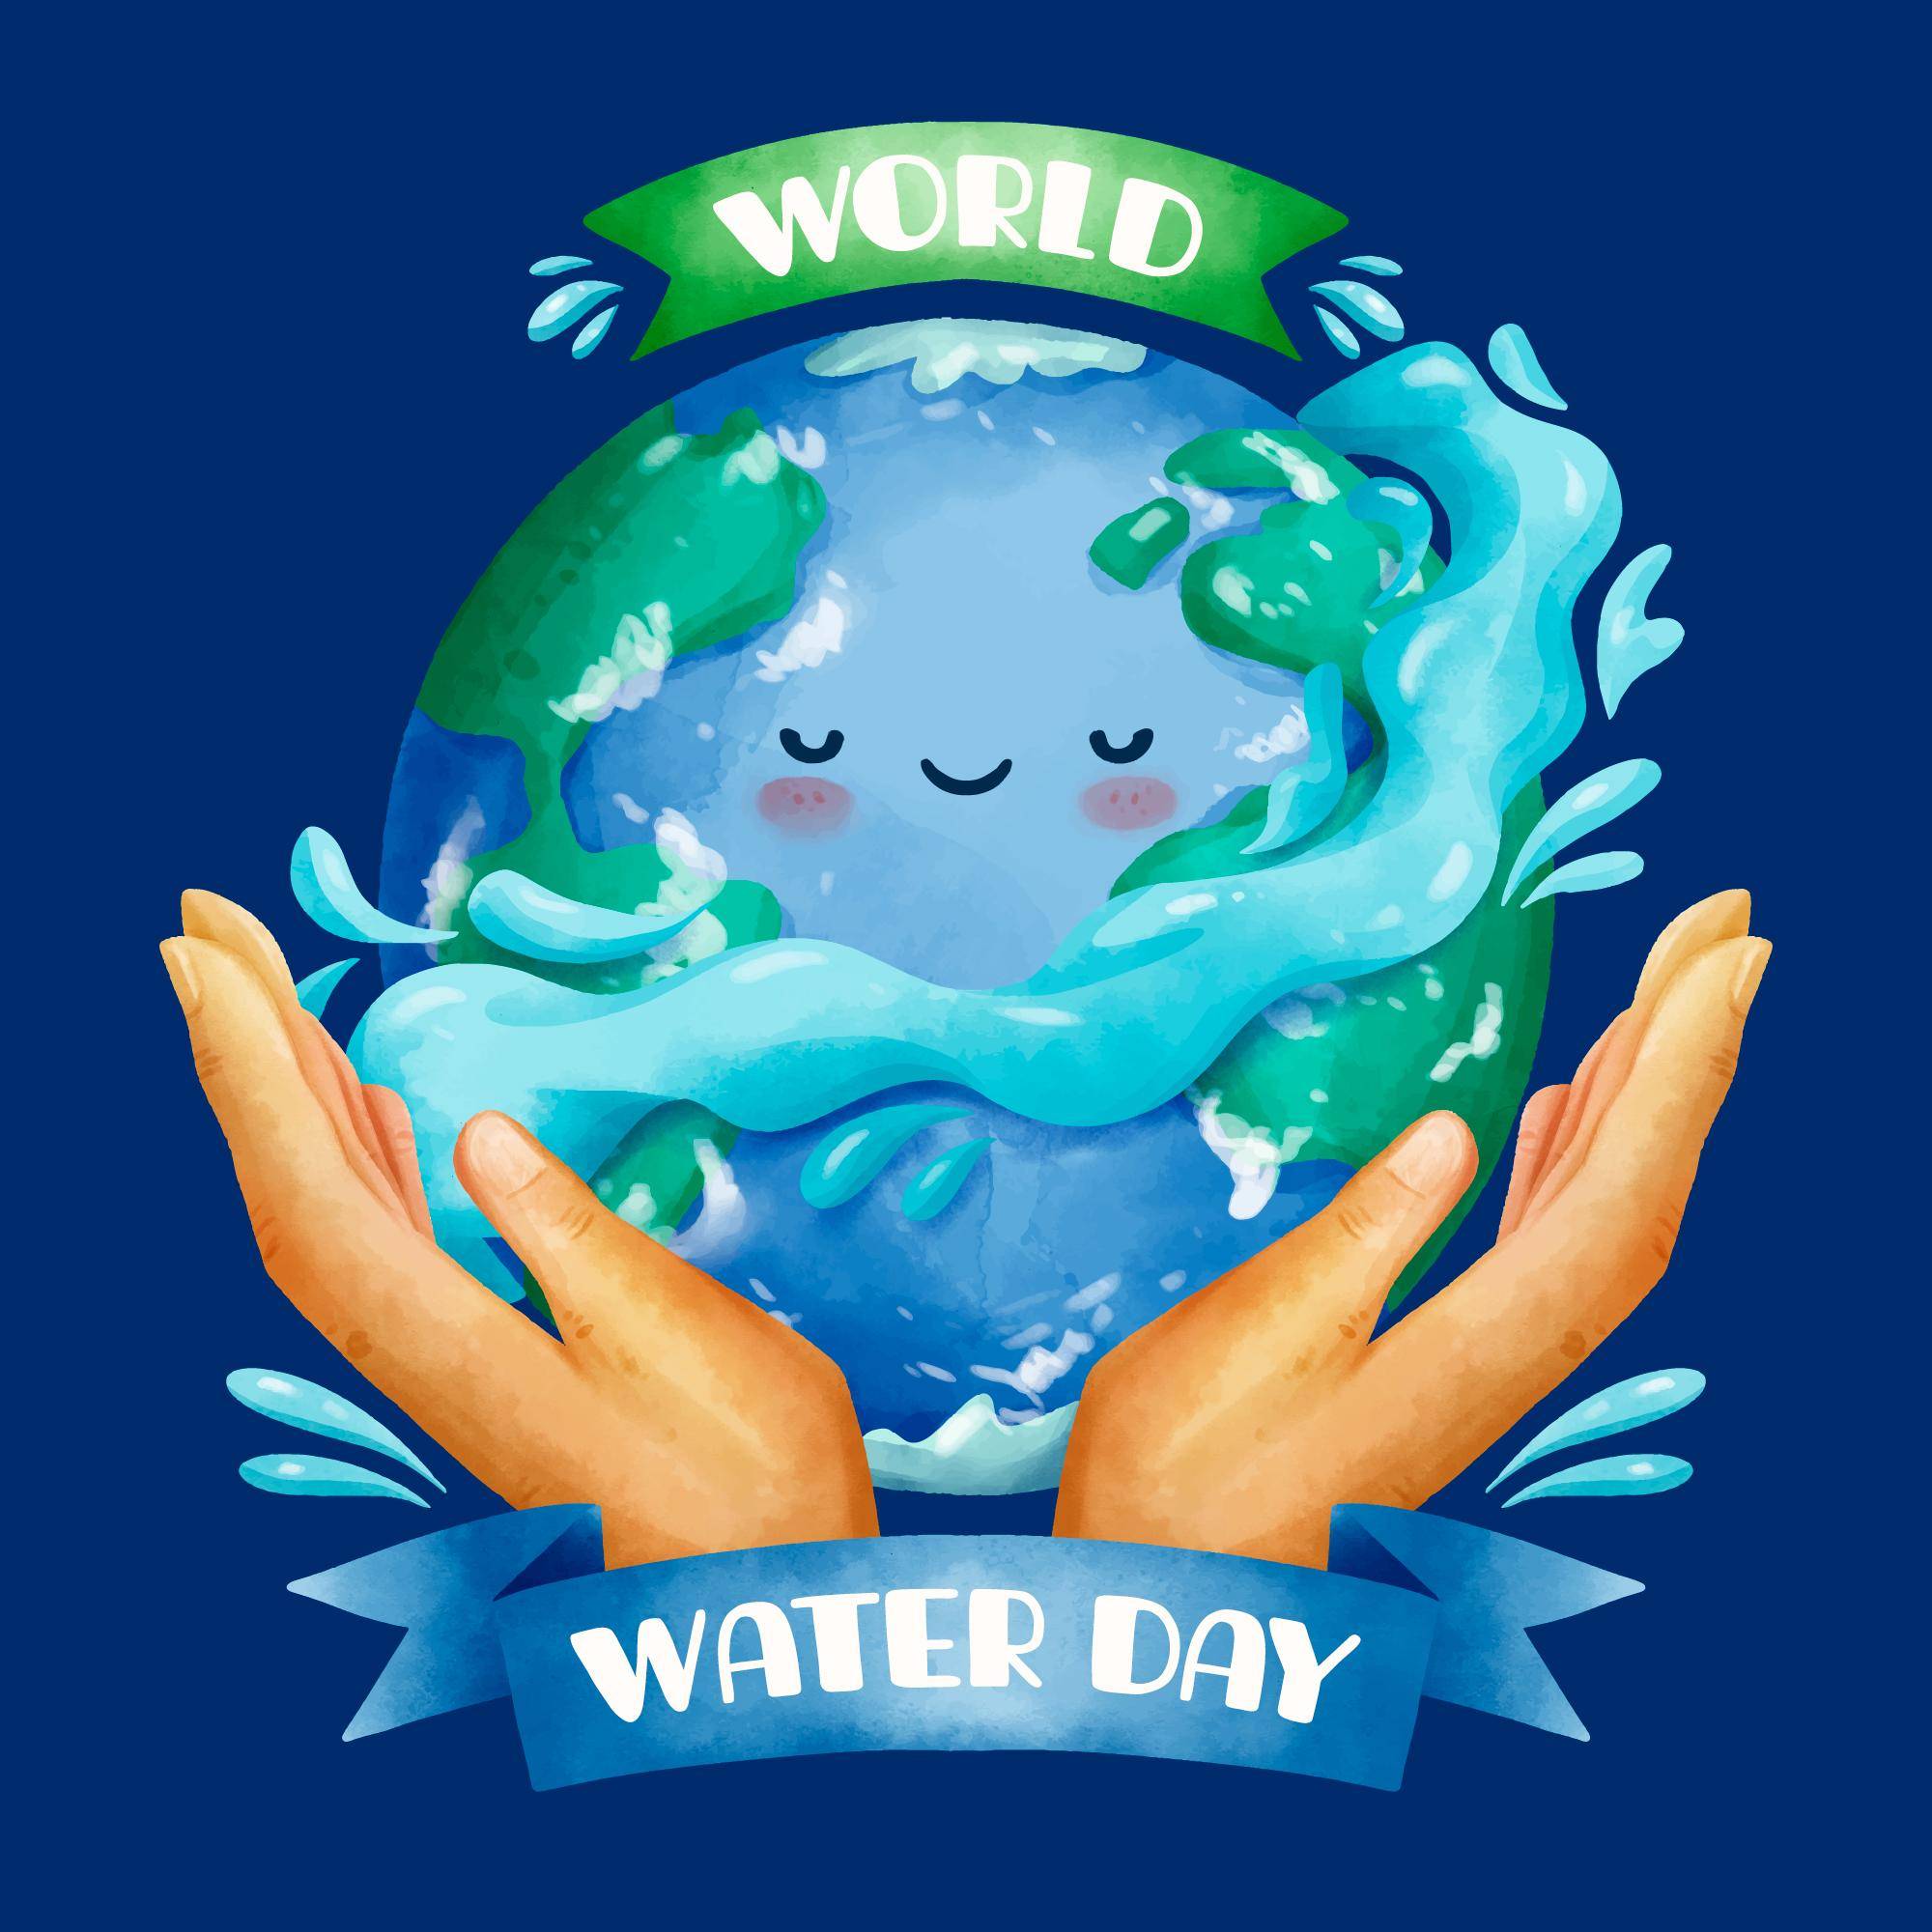 年第二十九届世界水日 联合国确定主题为 valuing water(珍惜水